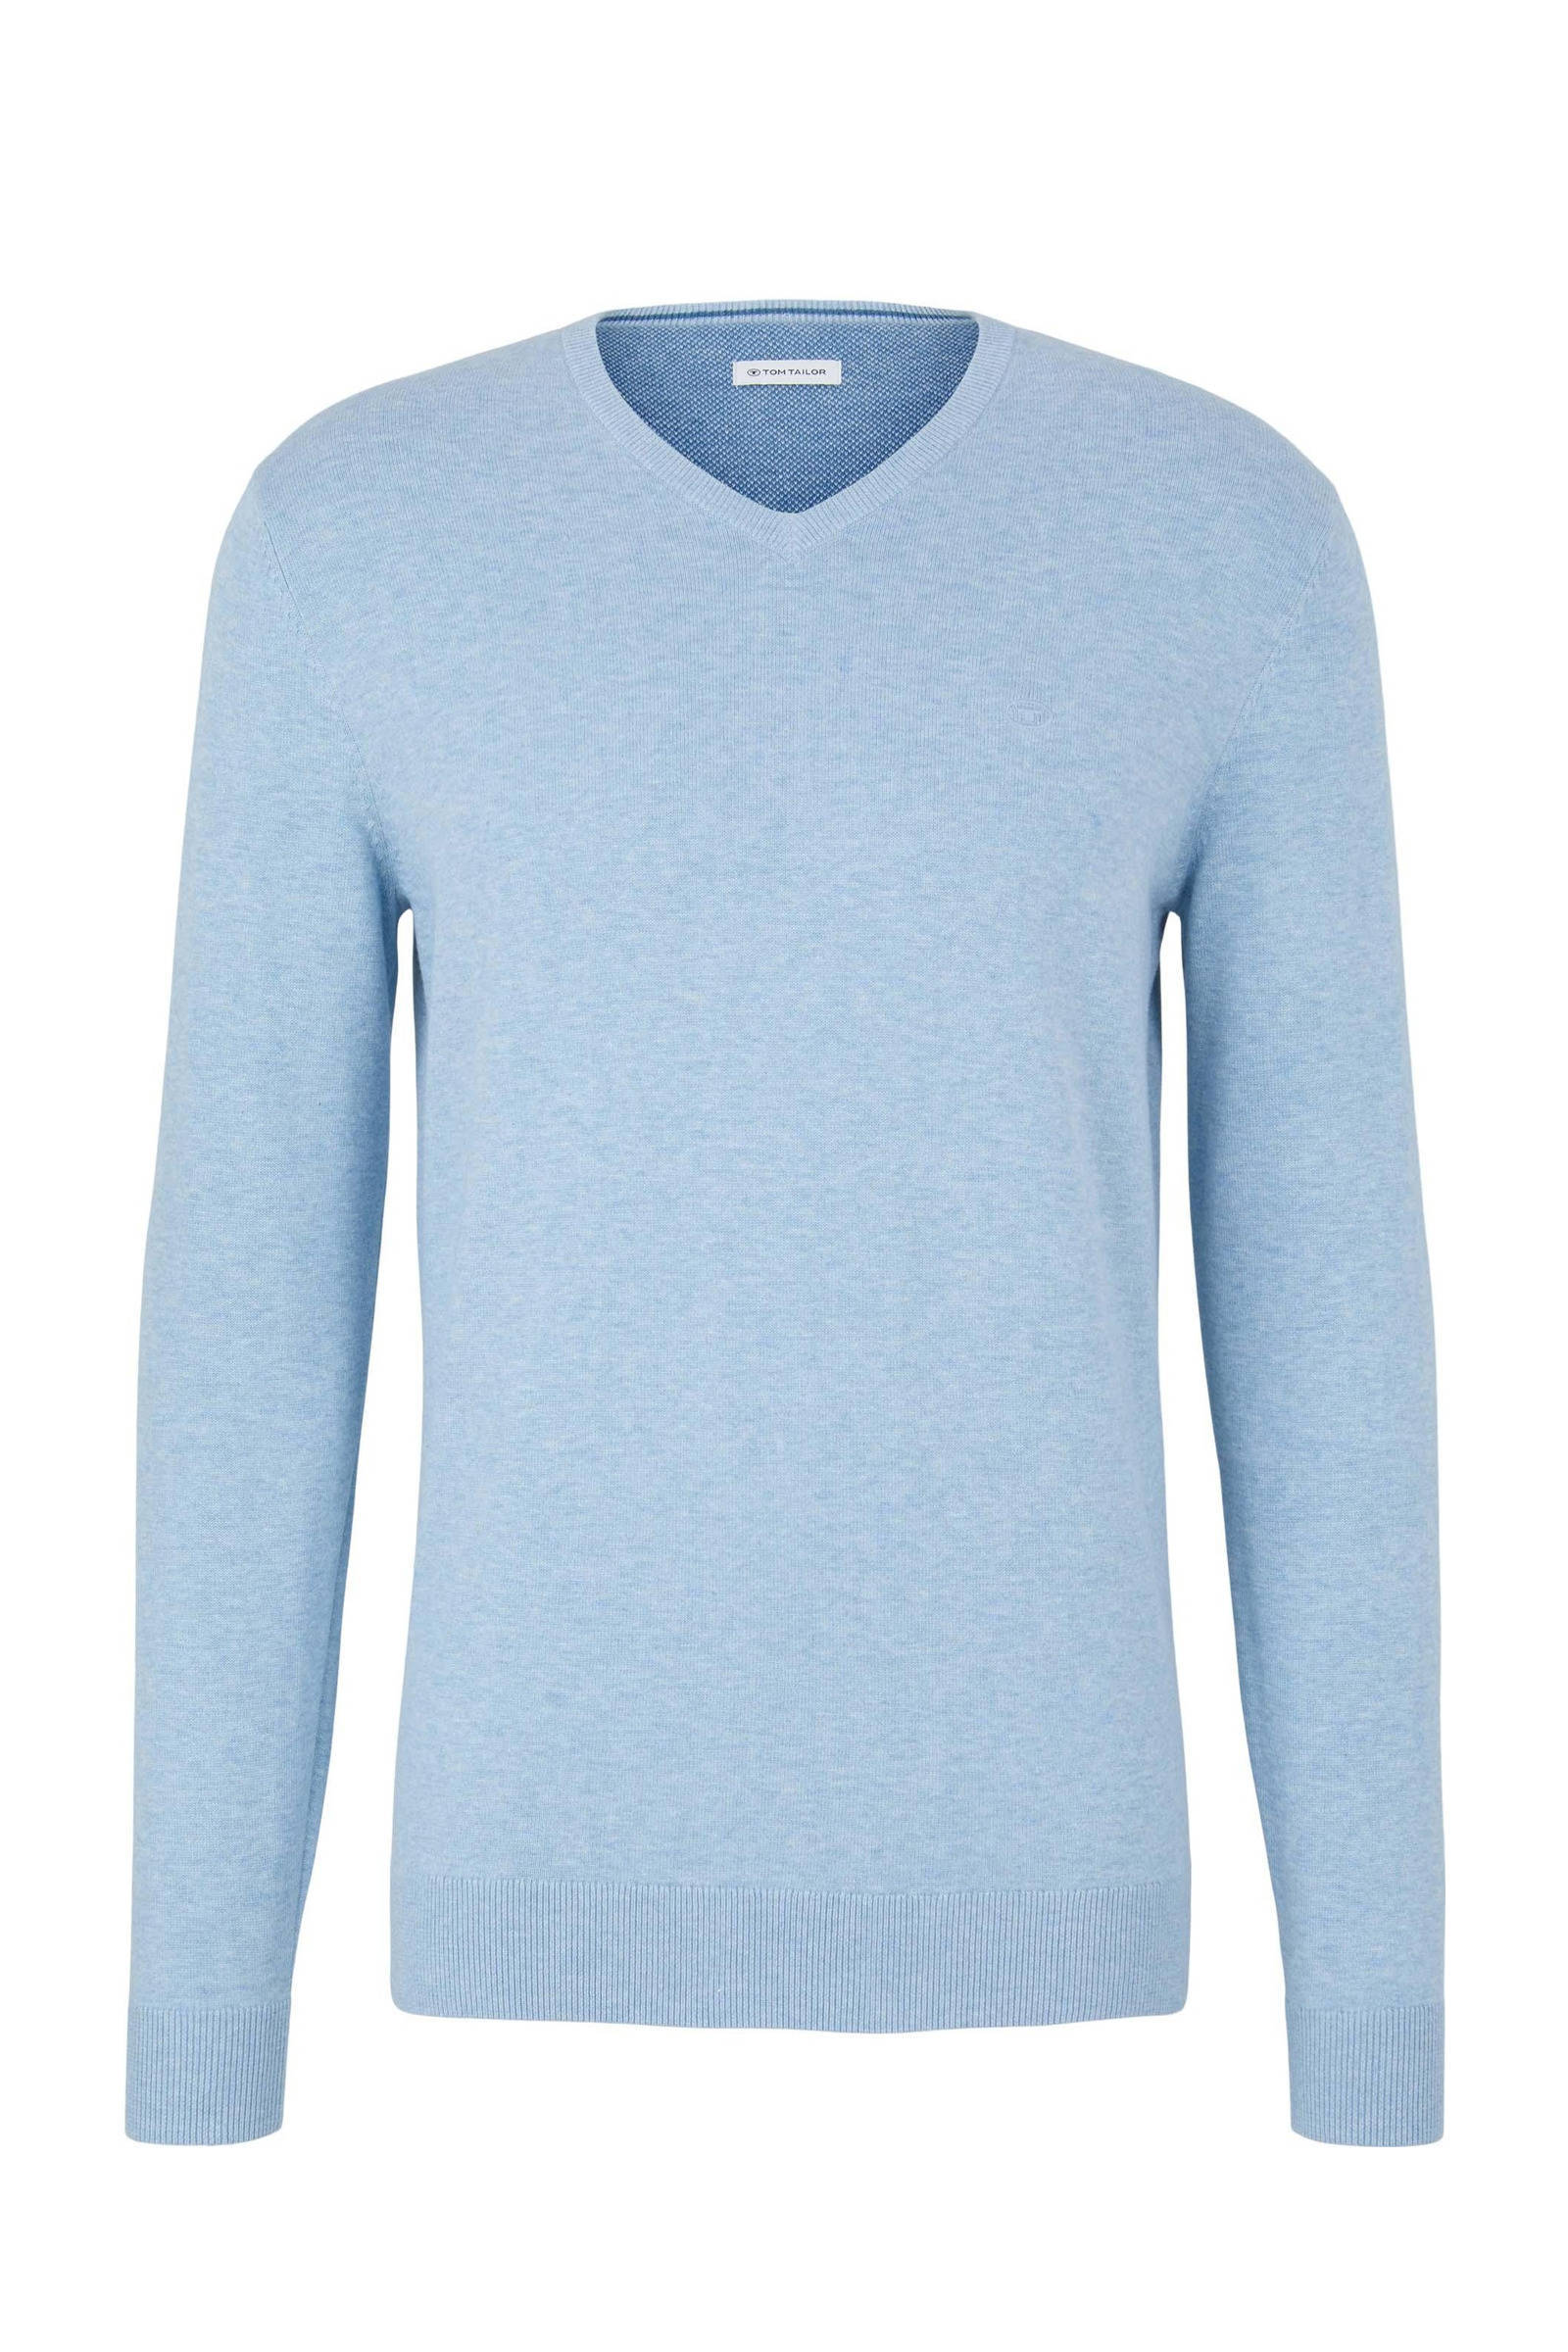 Tom Tailor gemêleerde fijngebreide pullover blue melange online kopen